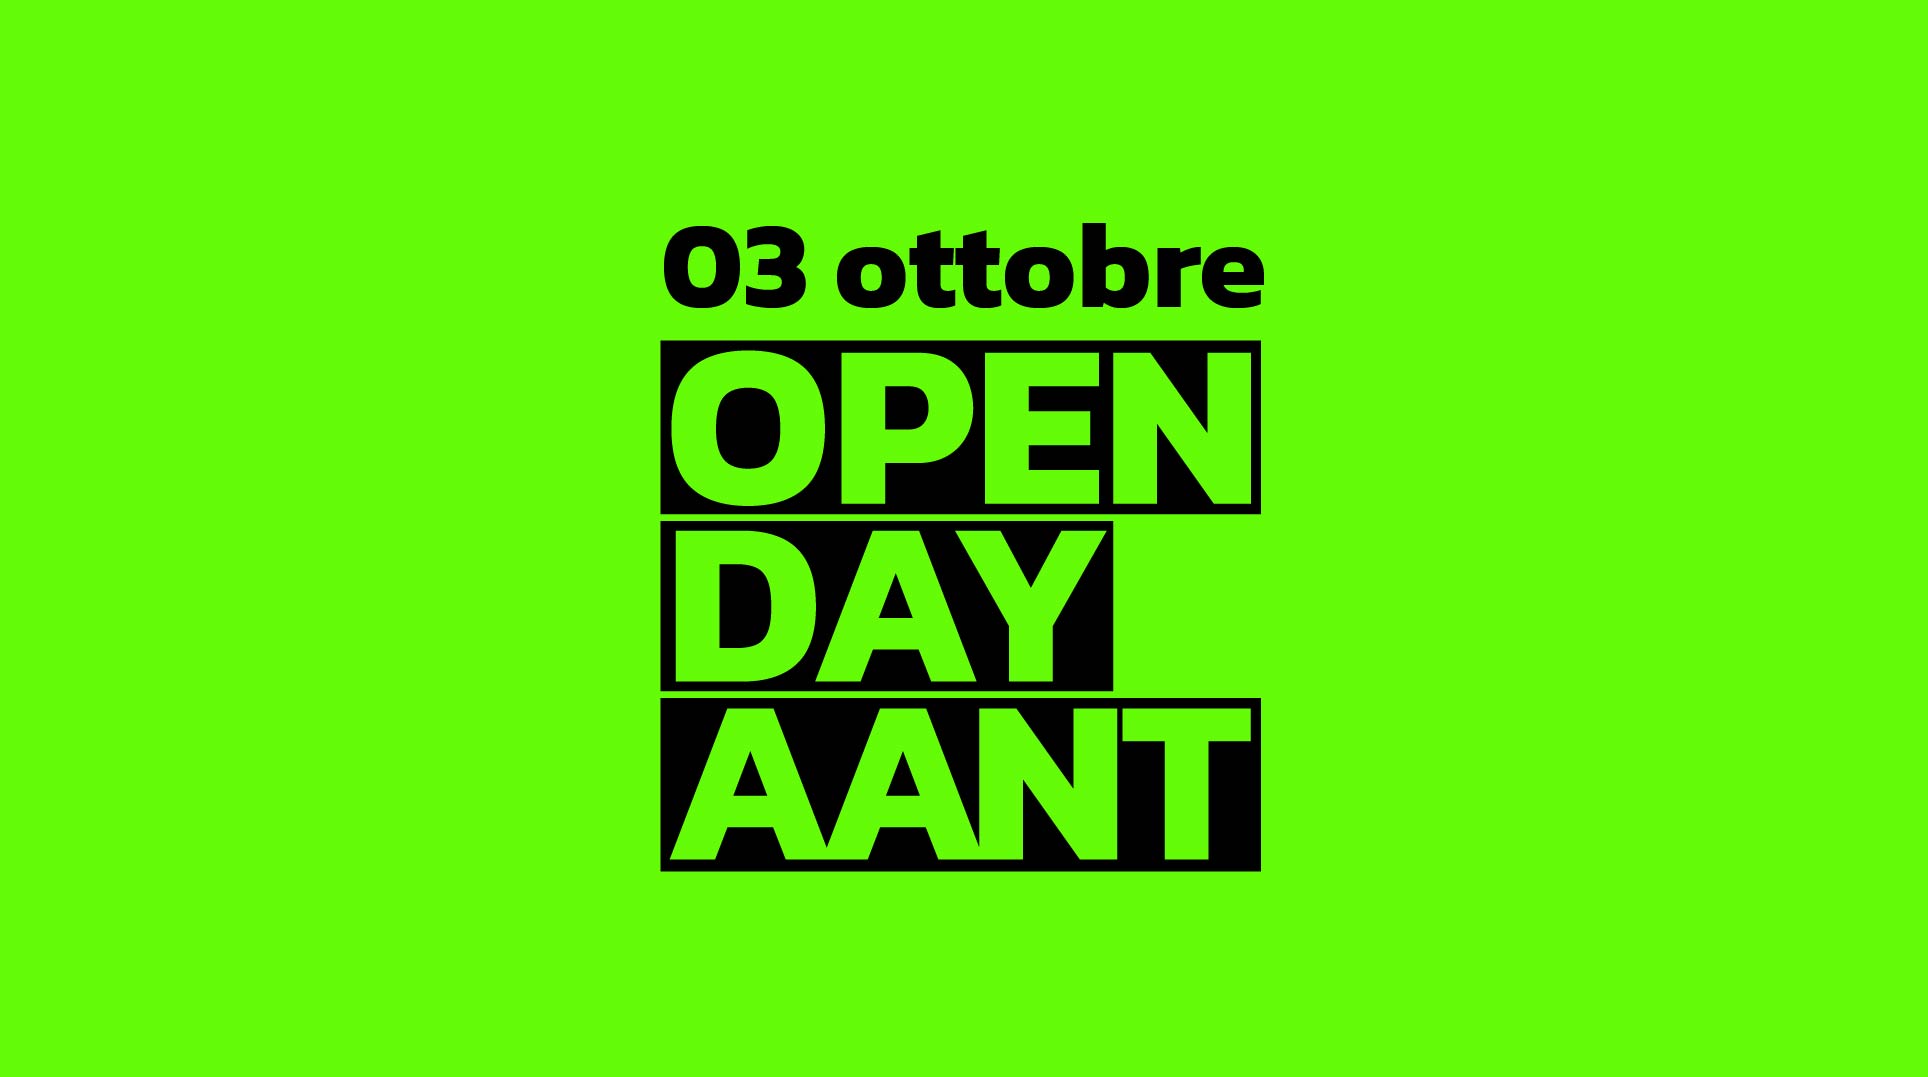 Open Day triennali <br>03 ottobre ore 18:00